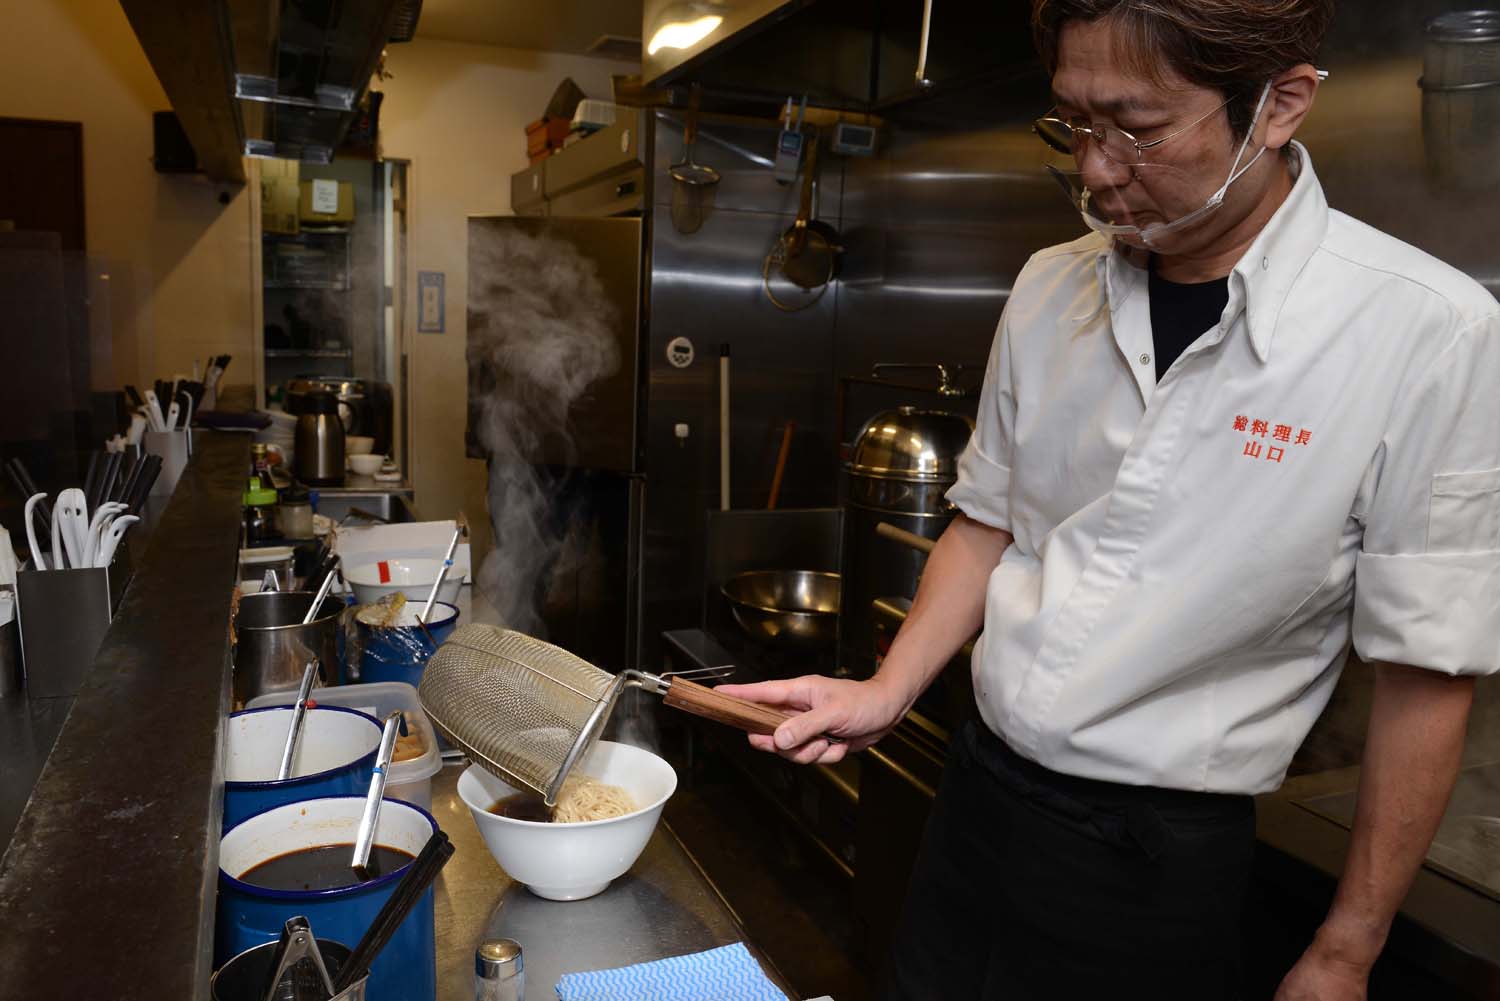 山口さんは今では店舗に出ることが少ないそうだが、常に新しくておいしいラーメンを作り続けている。